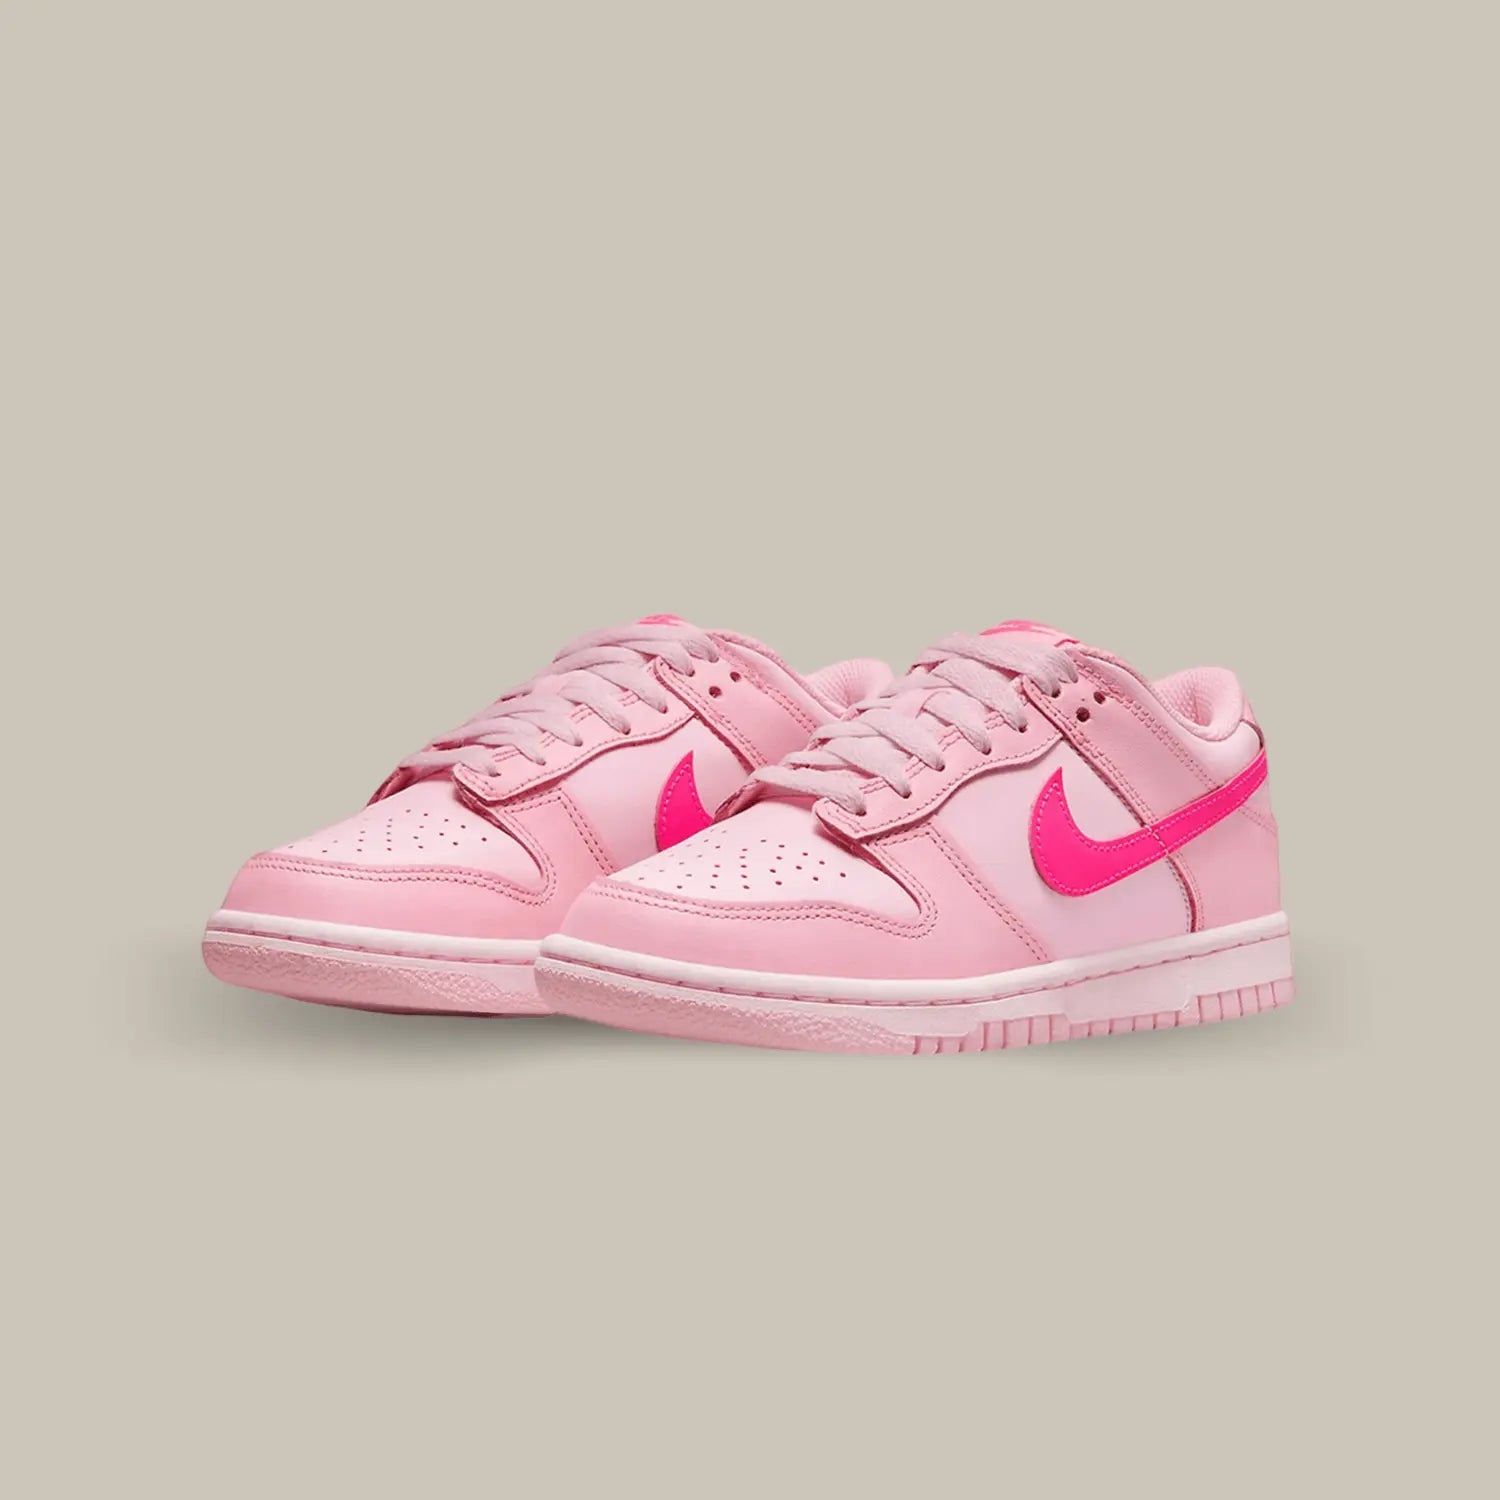 La Nike Dunk Low Triple Pink est une sneaker emblématique qui incarne l'équilibre parfait entre le style rétro et la modernité. Cette chaussure audacieuse présente une palette de couleurs captivante qui saura attirer tous les regards. Arborant un design classique de la silhouette Dunk Low, cette version Triple Pink ajoute une touche de fraîcheur et de féminité à votre garde-robe.